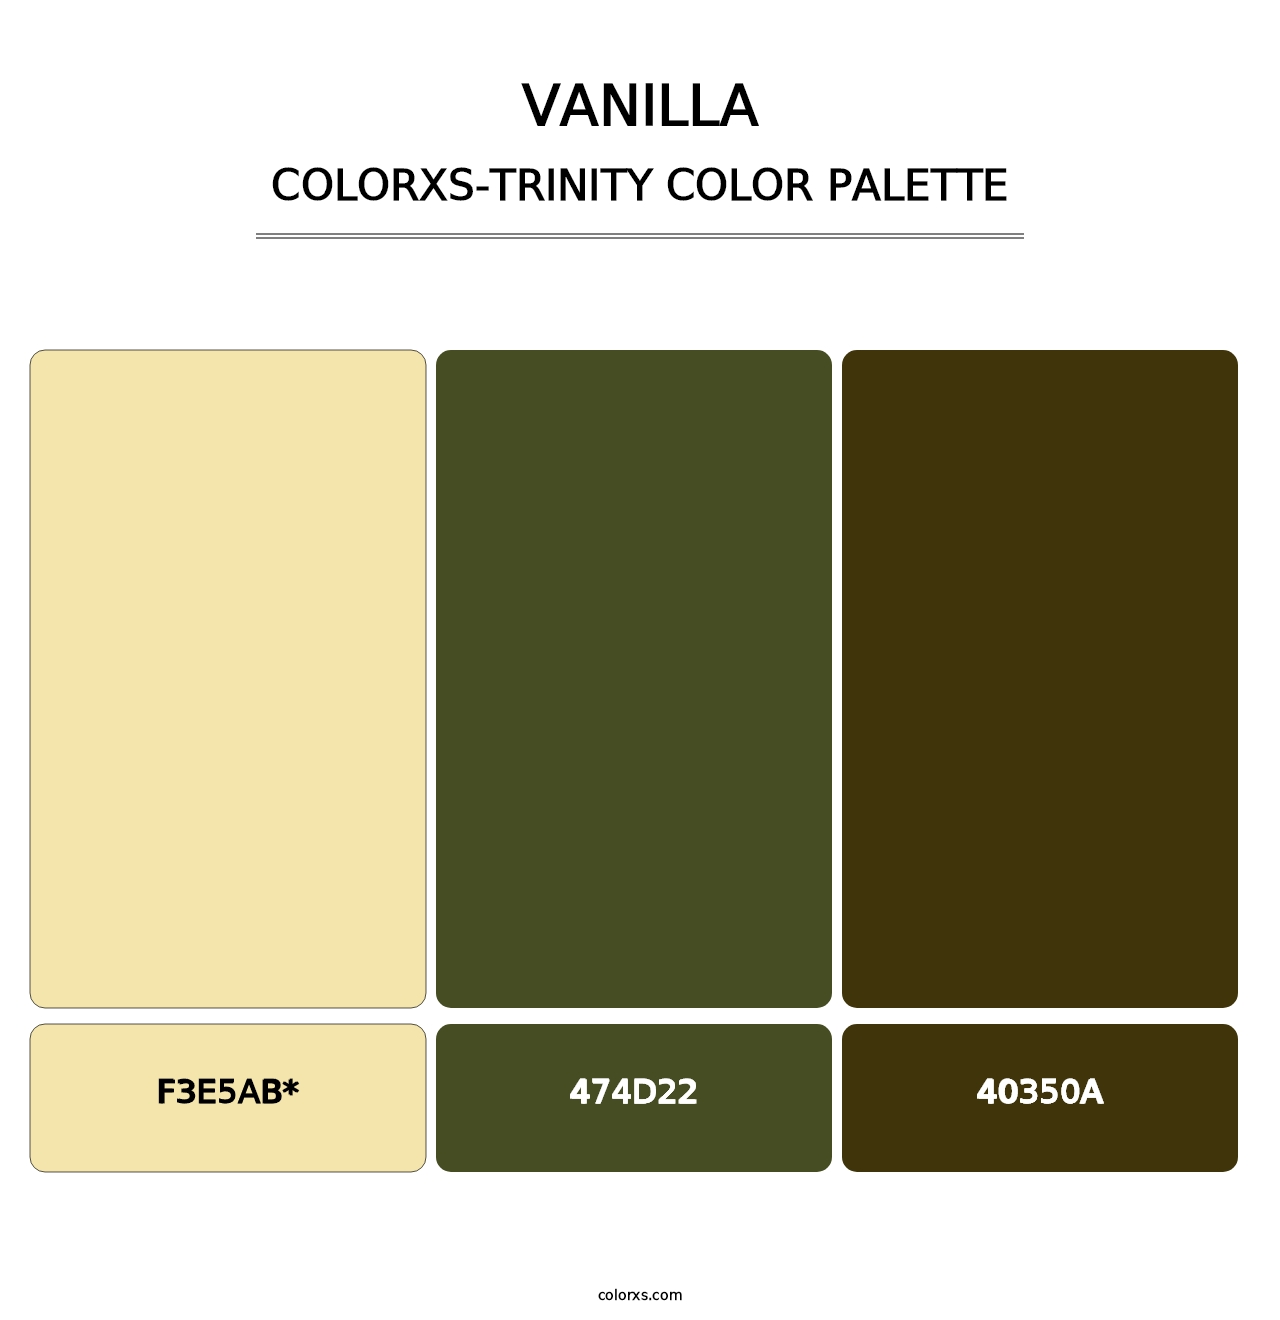 Vanilla - Colorxs Trinity Palette